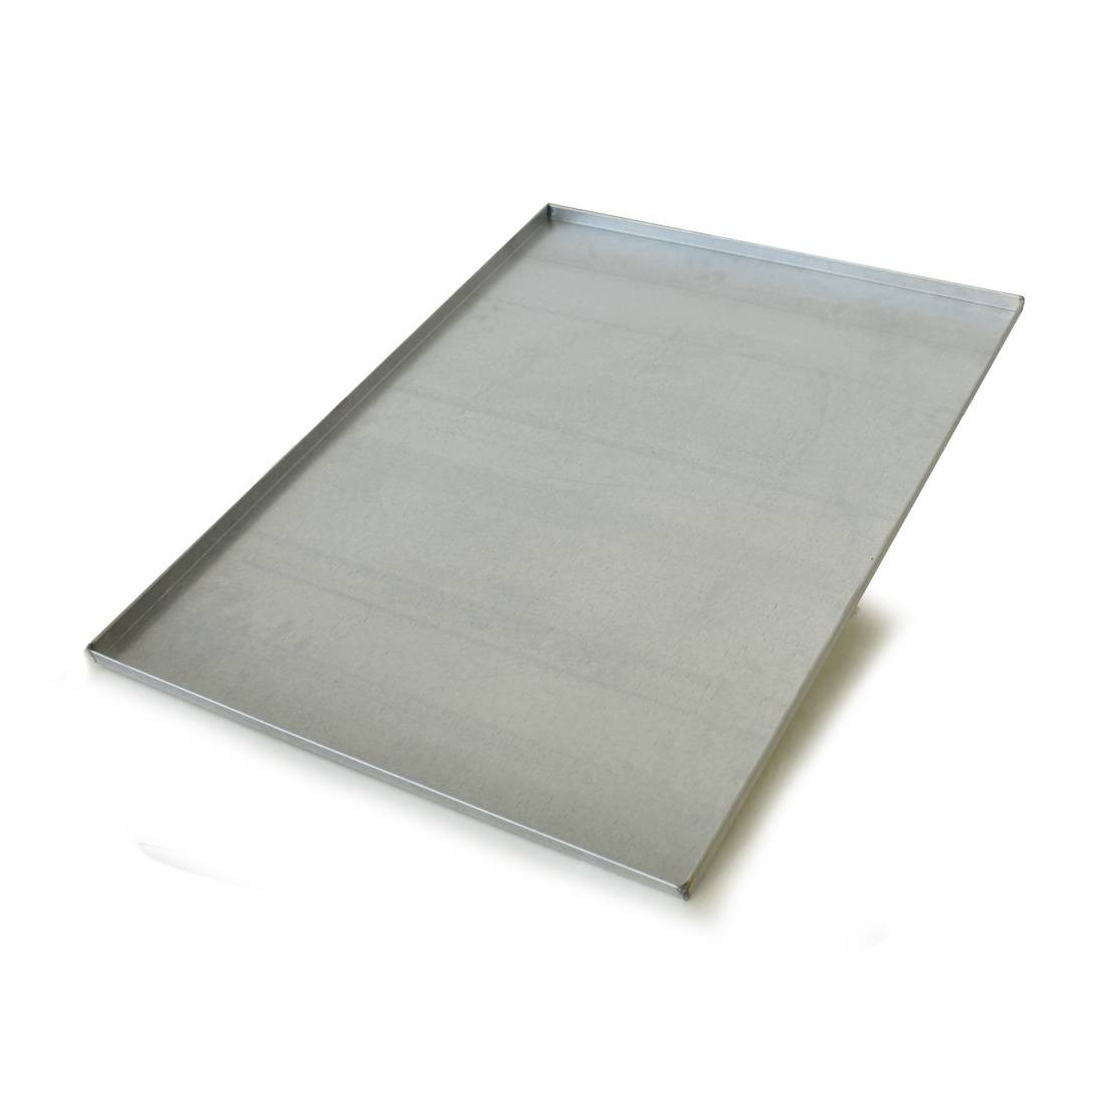 M.C.E  Baking tray in aluminized steel 60x80 cm